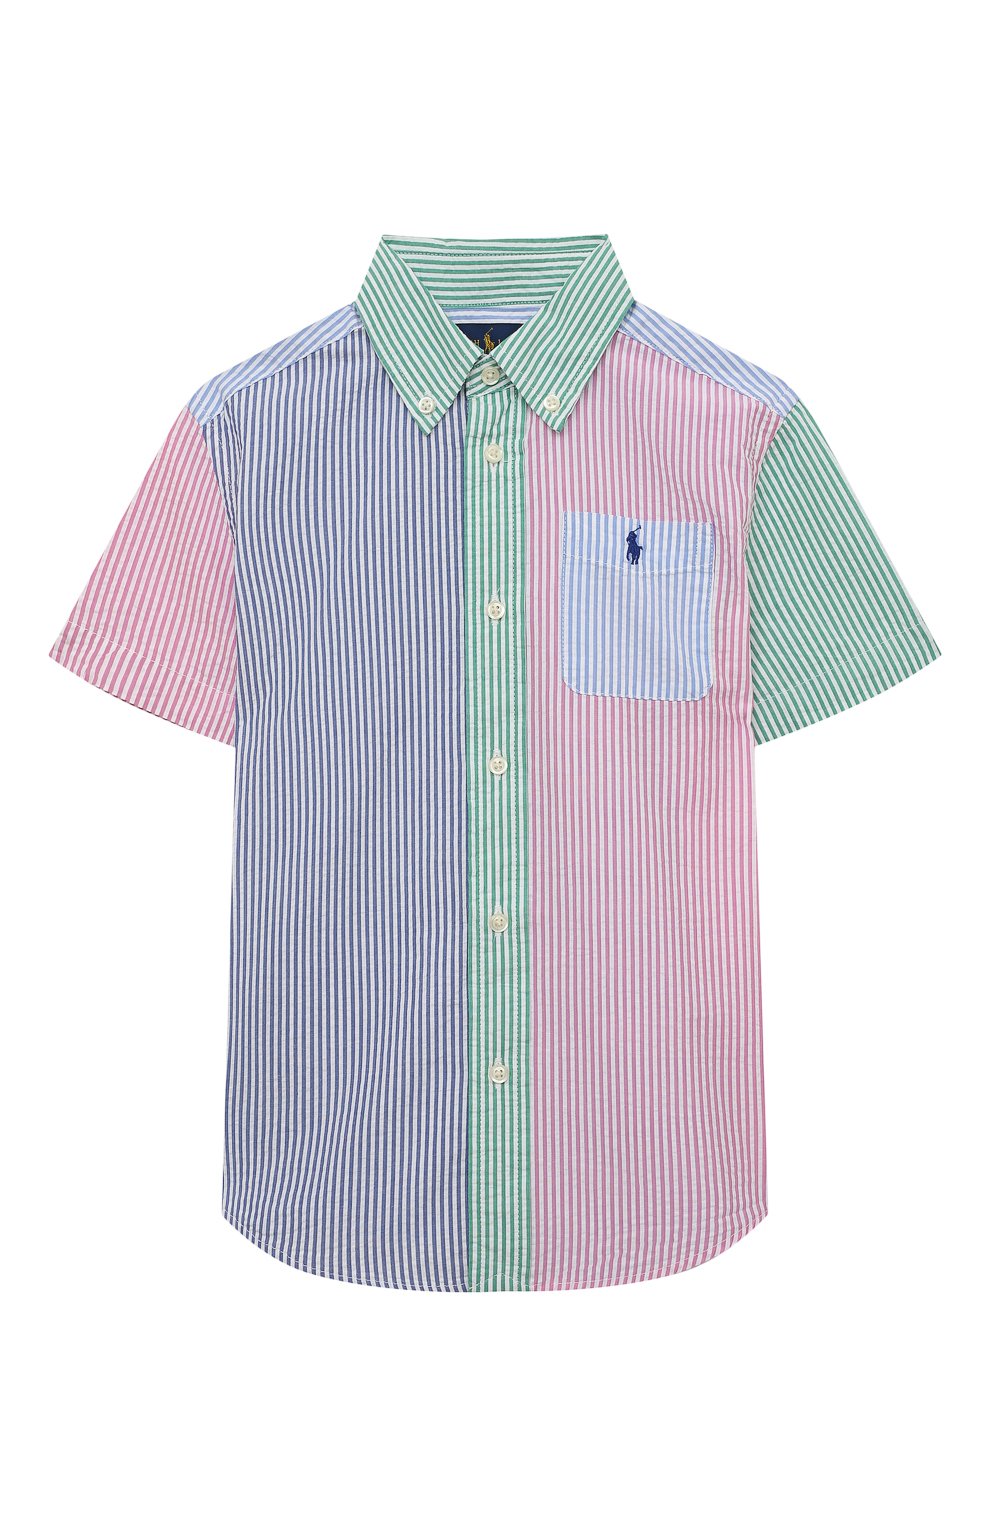 Рубашки Polo Ralph Lauren, Хлопковая рубашка Polo Ralph Lauren, Вьетнам, Разноцветный, Хлопок: 100%;, 12723810  - купить